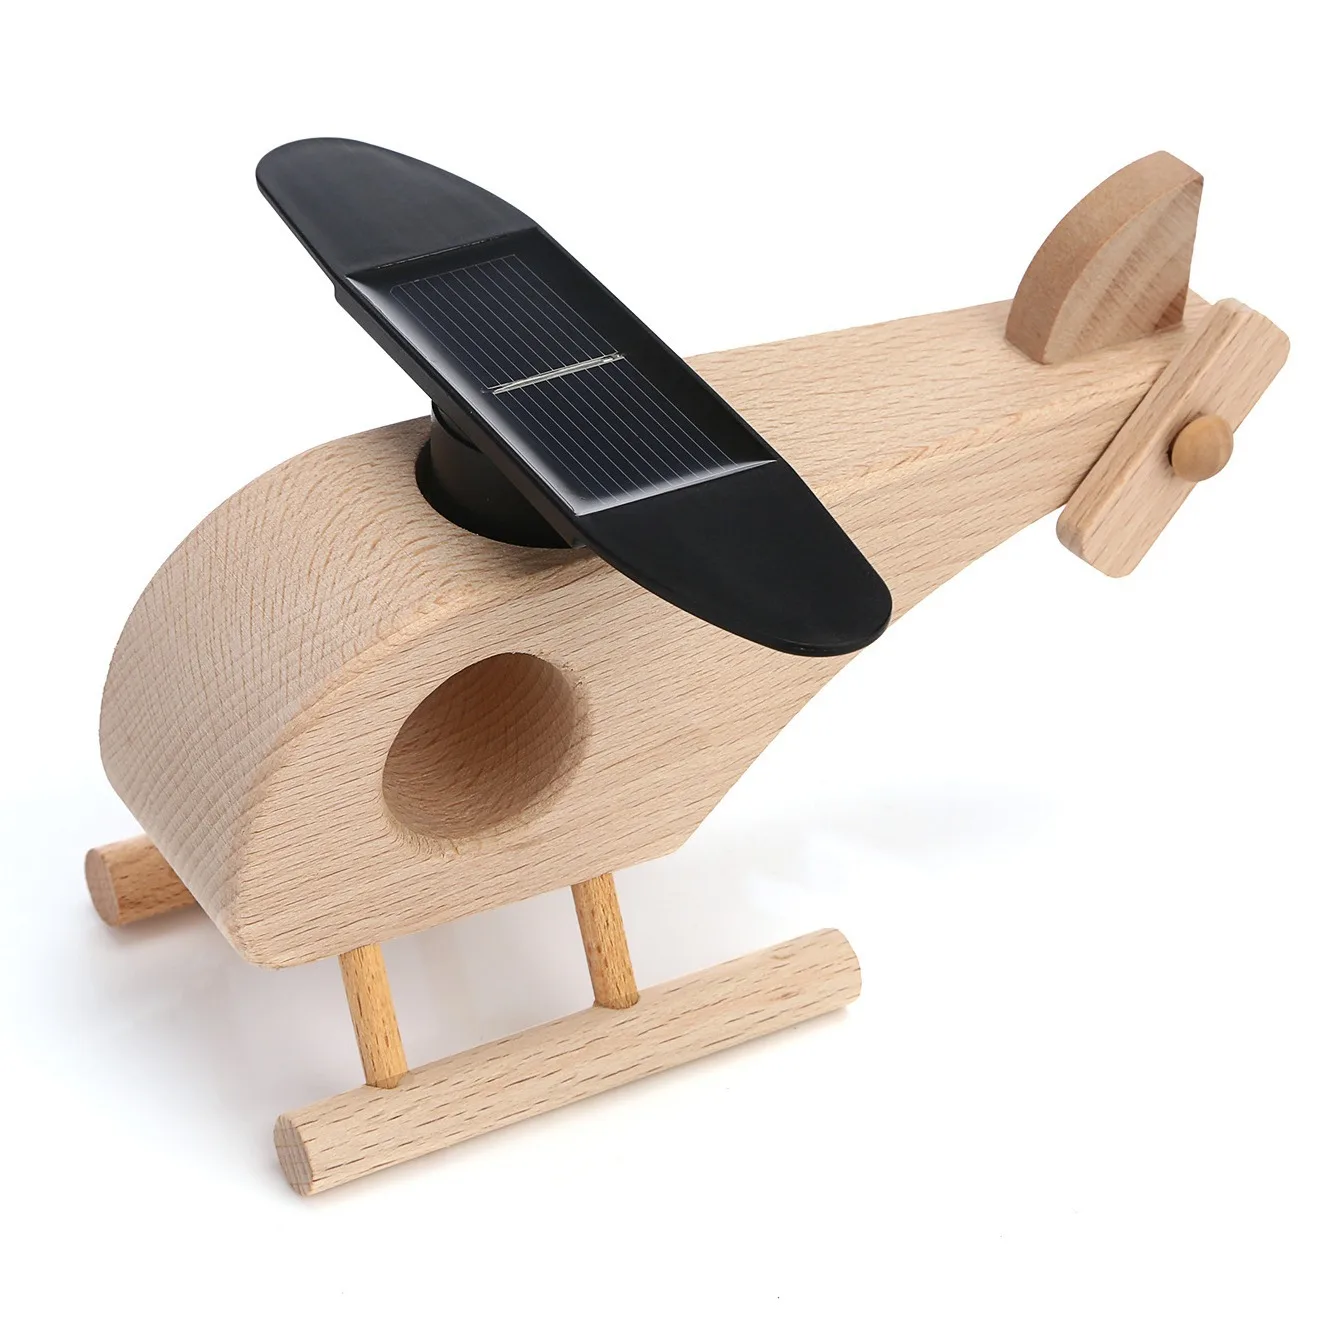 Самодельная креативная игрушка деревянная на солнечной батарее модель самолета